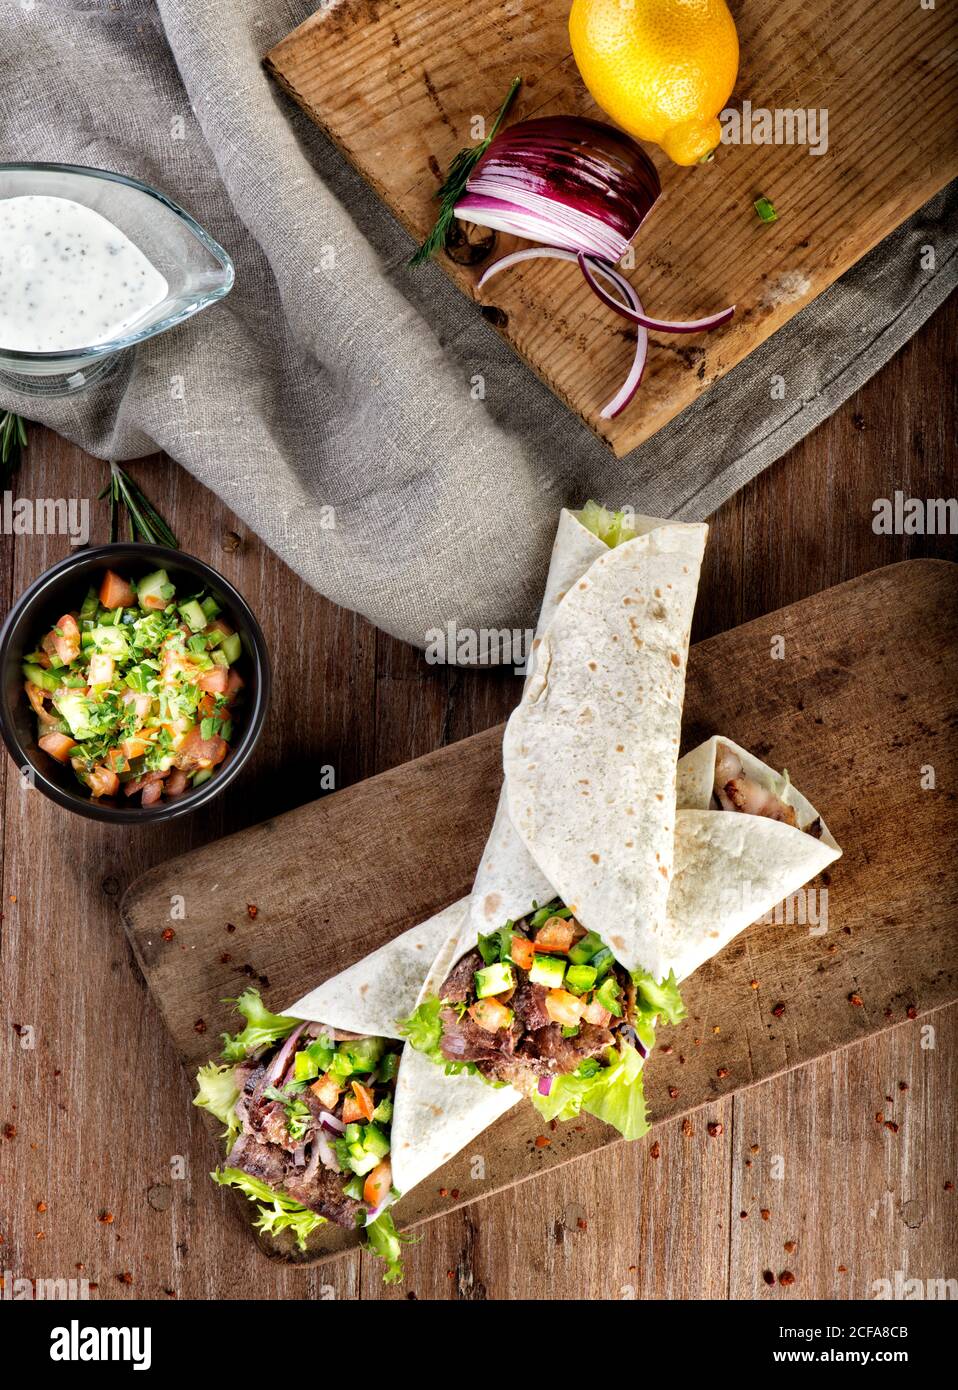 Vue de dessus de l'en-cas turc traditionnel de blé dur fait avec emballé pain plat rempli de kebab avec de la viande d'agneau et des légumes servi sur une table en bois Banque D'Images